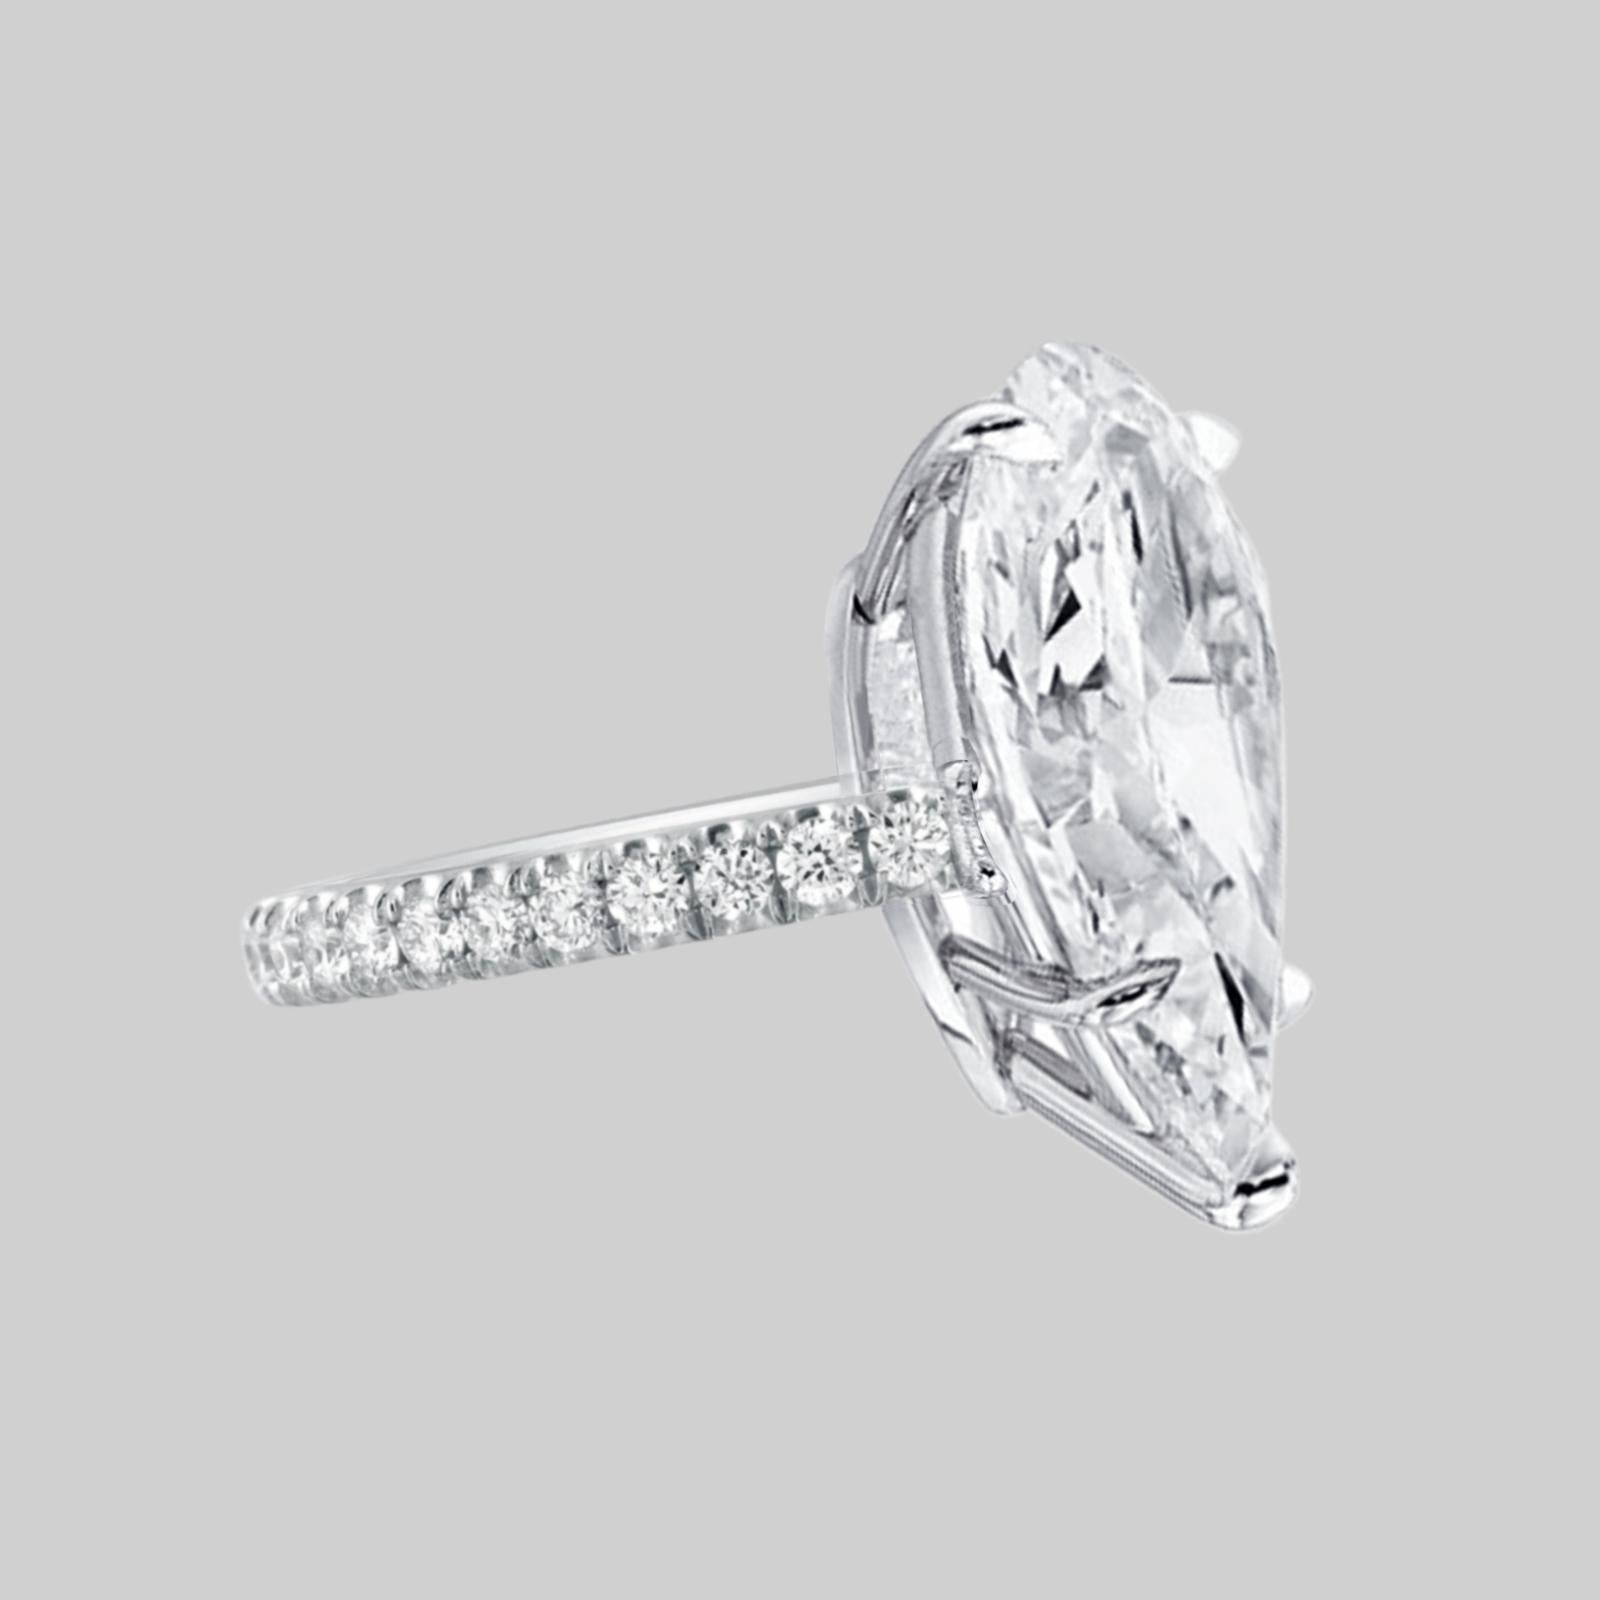 Cette bague exquise, ornée d'un diamant en forme de poire certifié par le GIA, est un mélange parfait d'élégance et de design moderne.

**Diamant central:**  
La pièce maîtresse de cette bague sophistiquée est un magnifique diamant en forme de poire